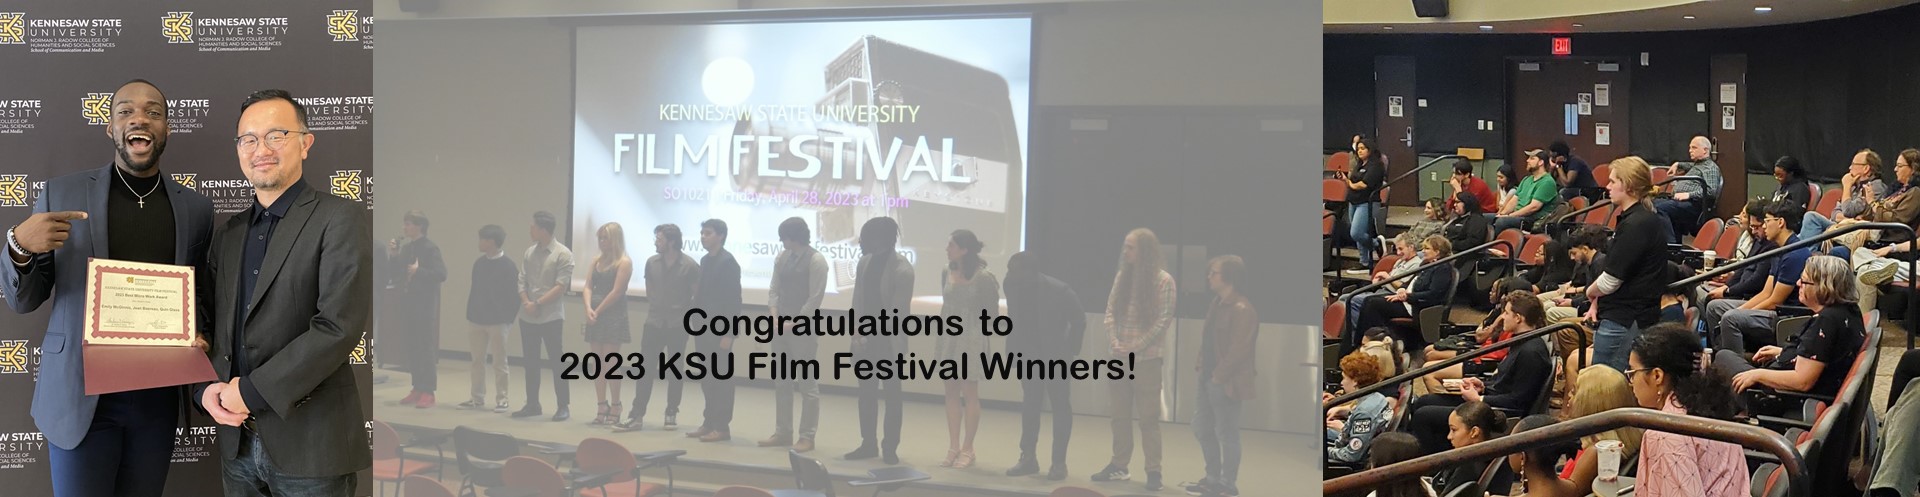 film festival winners